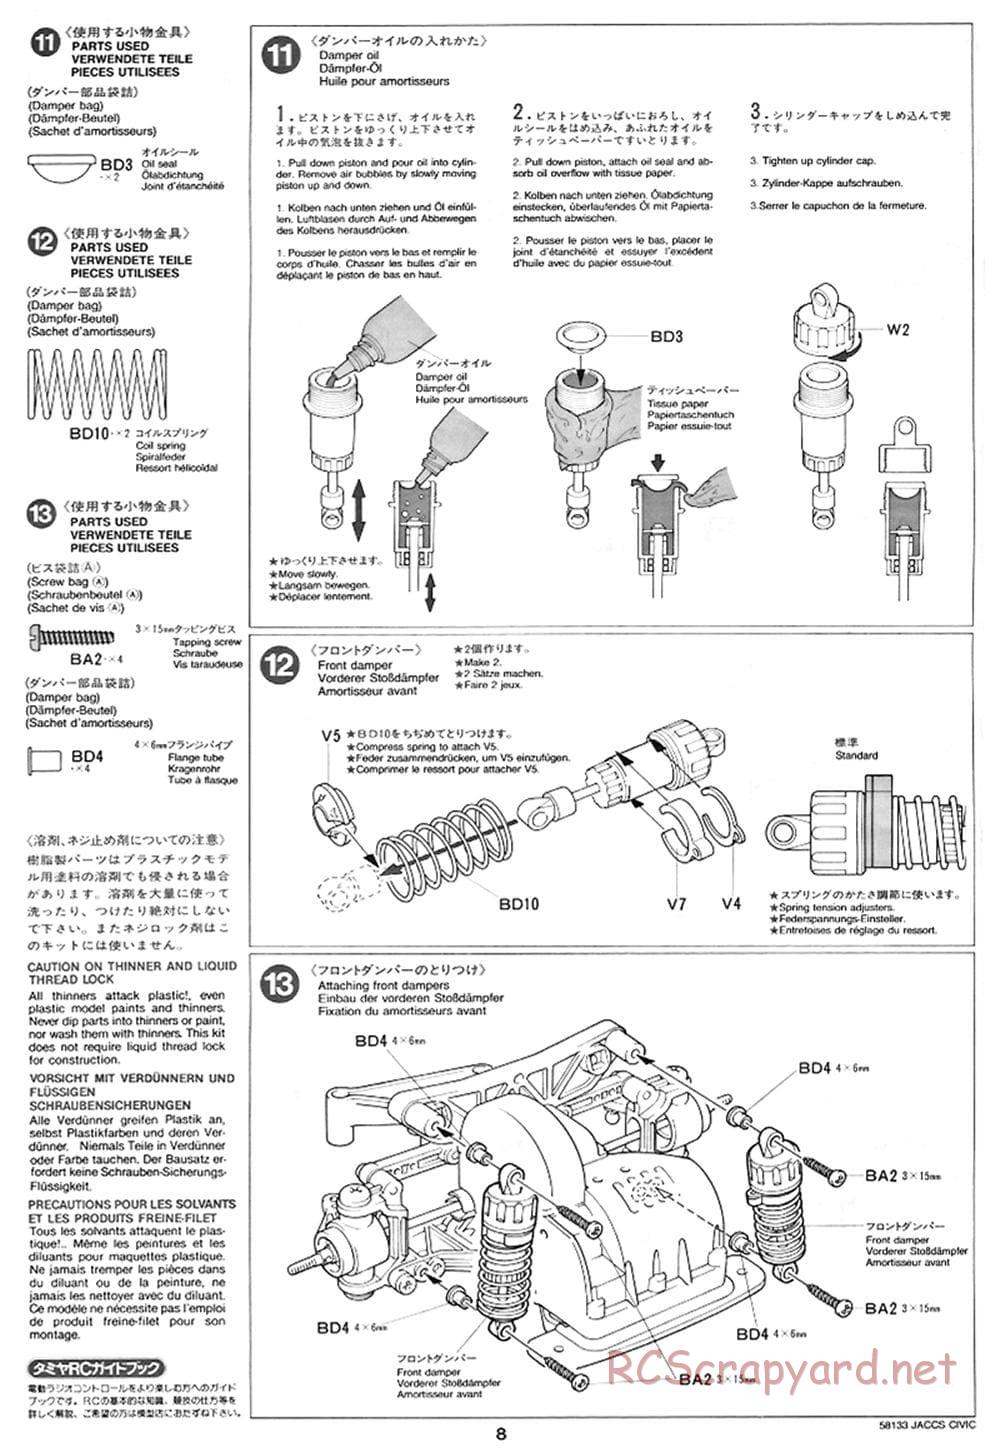 Tamiya - JACCS Honda Civic - FF-01 Chassis - Manual - Page 8